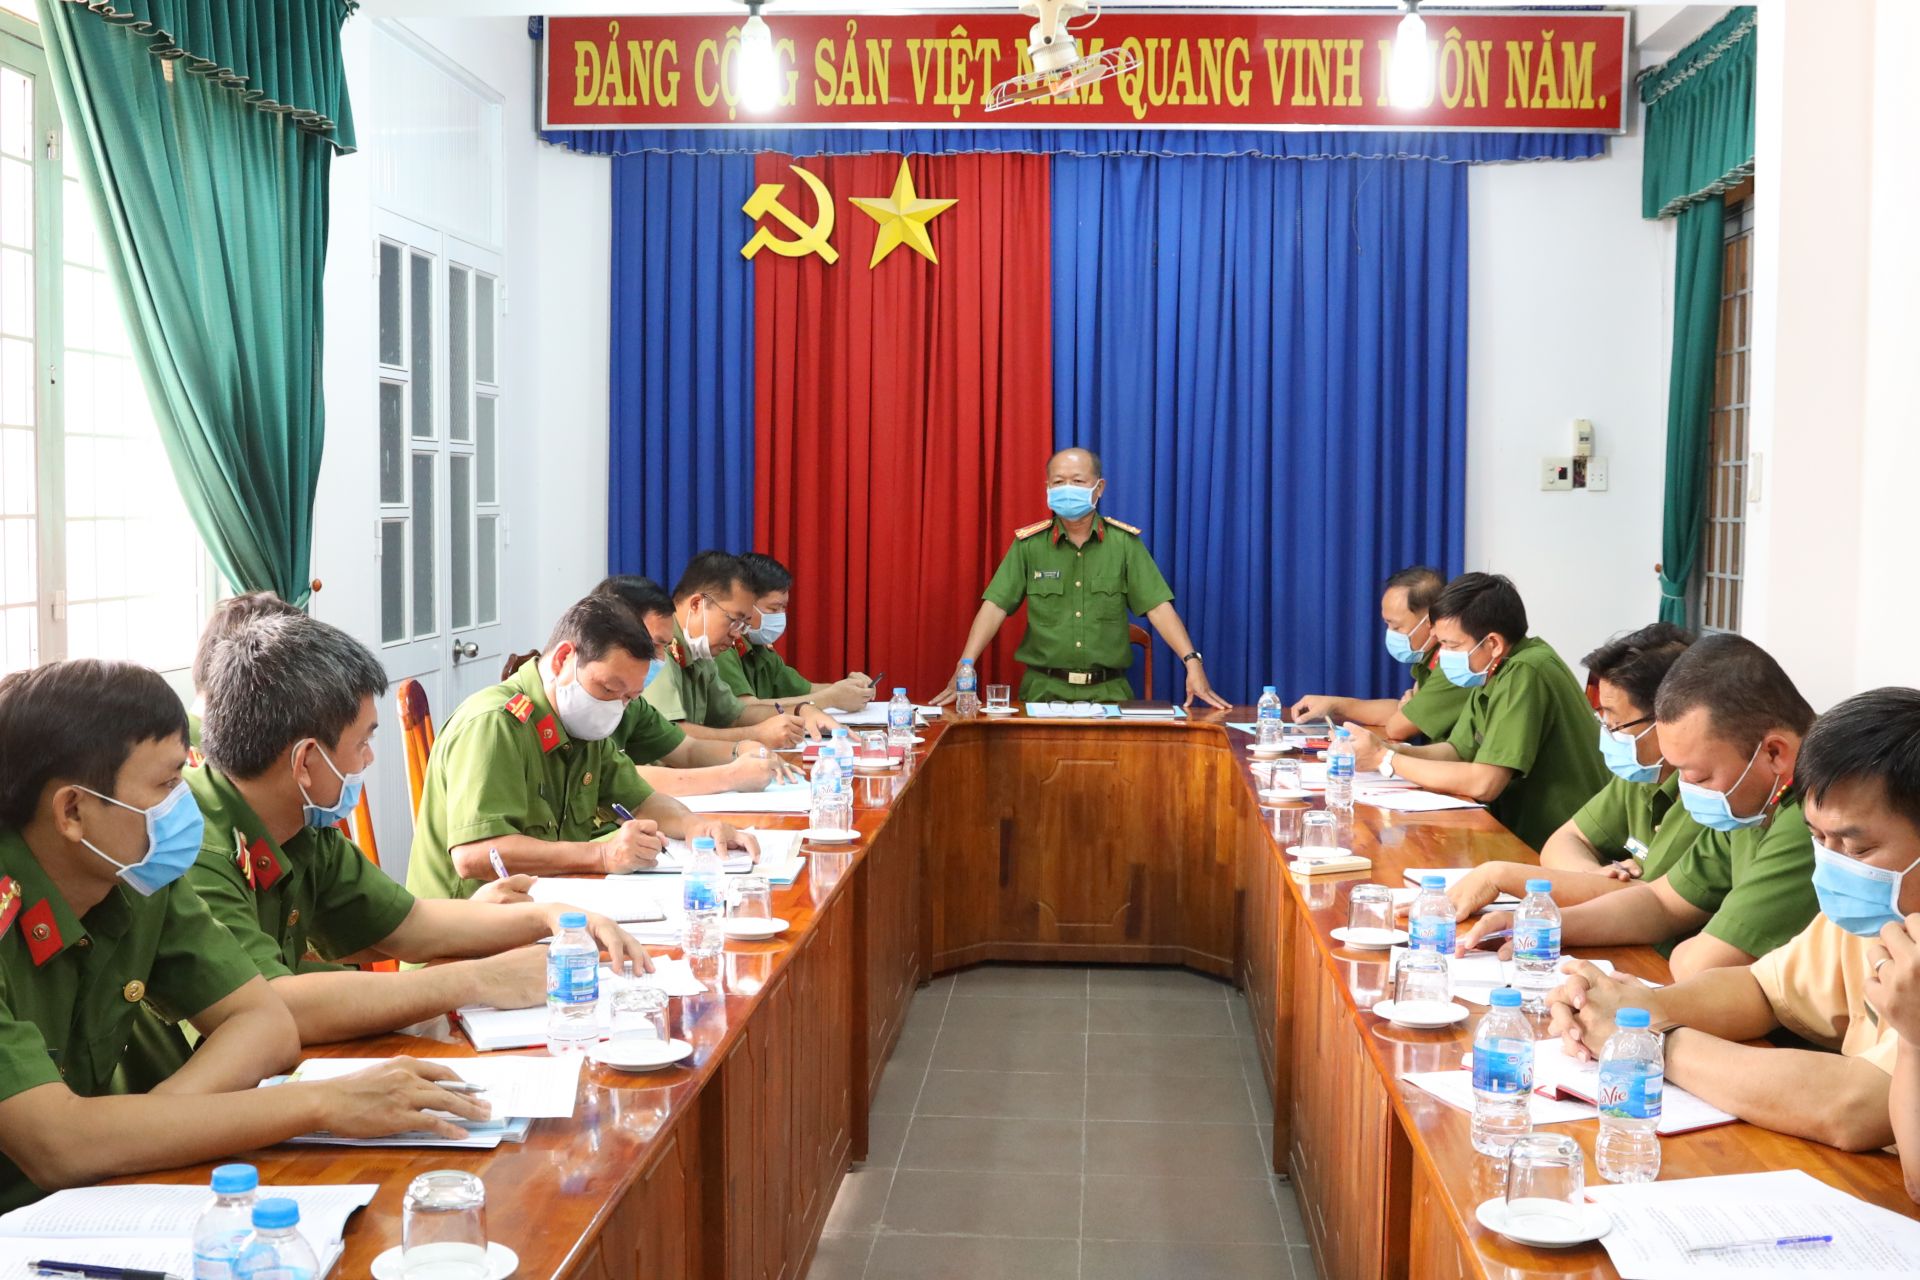 Lực lượng Công an tỉnh Tây Ninh chủ động phát hiện, xử lý vi phạm pháp luật hình sự